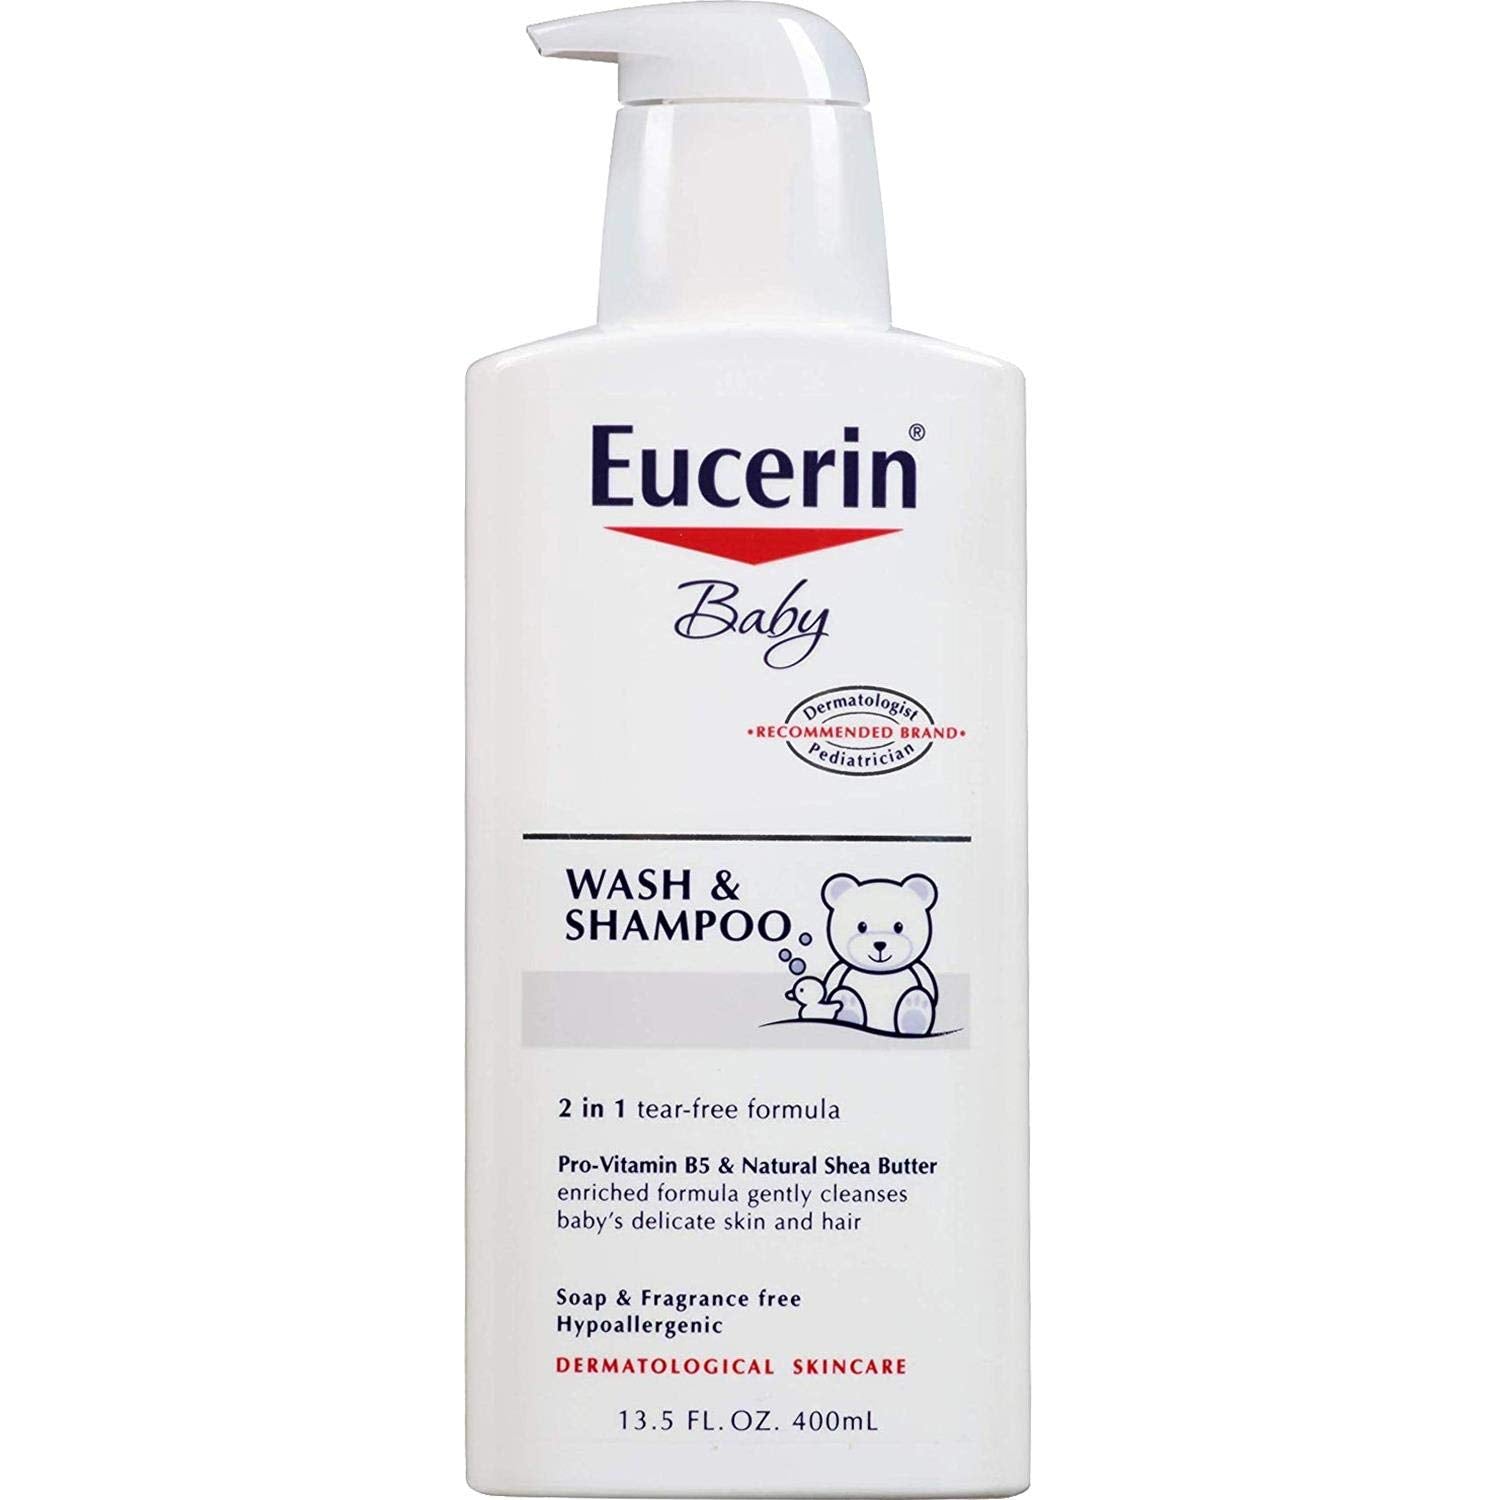 Eucerin Baby Wash & Shampoo